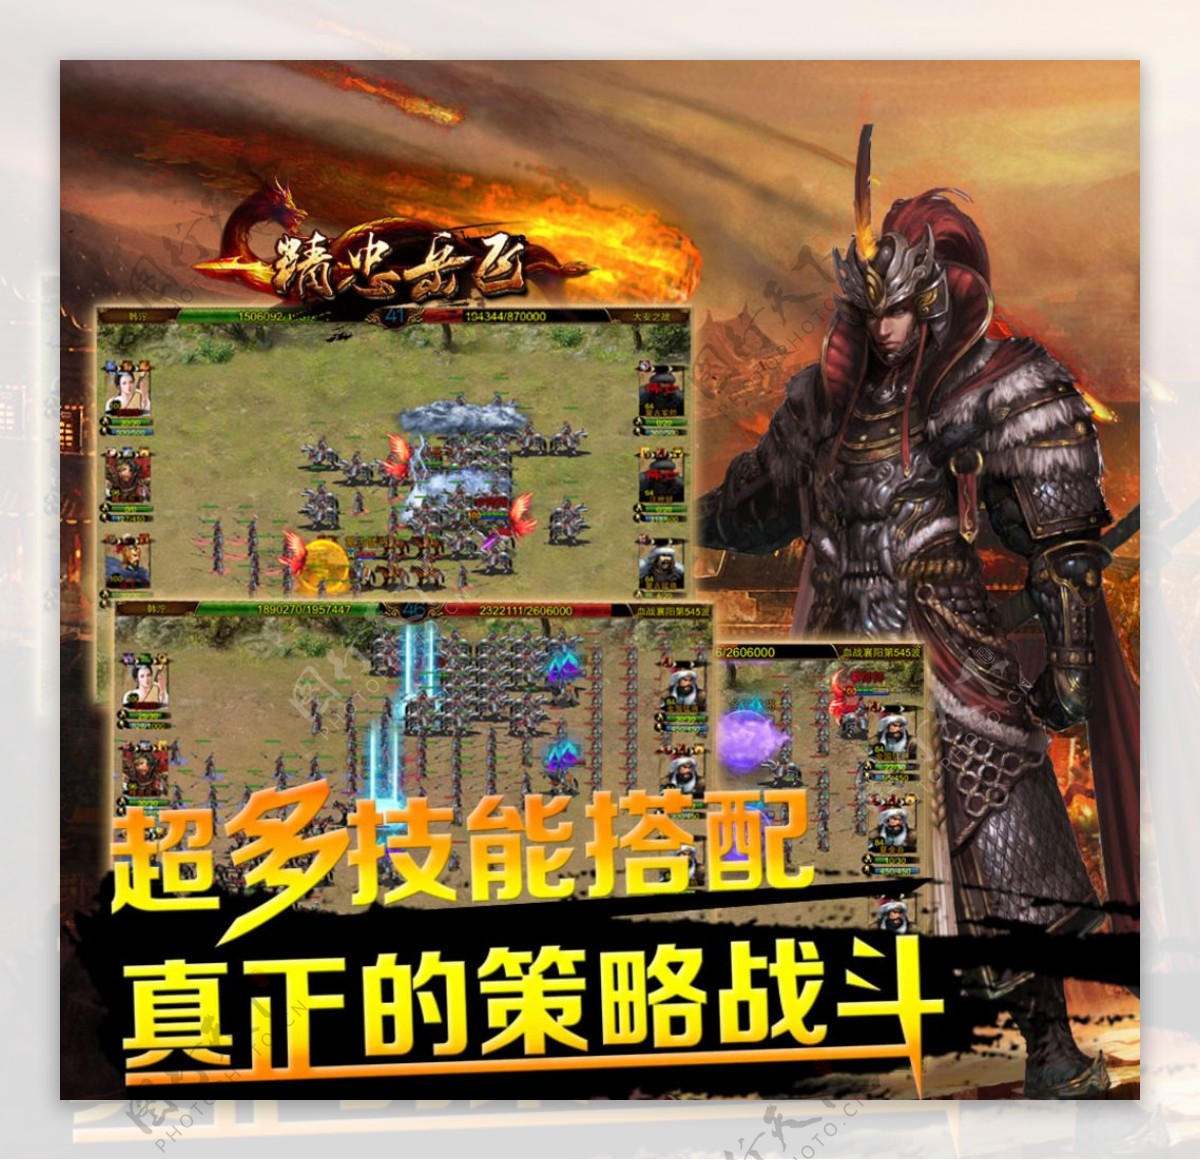 游戏战斗画面宣传图片